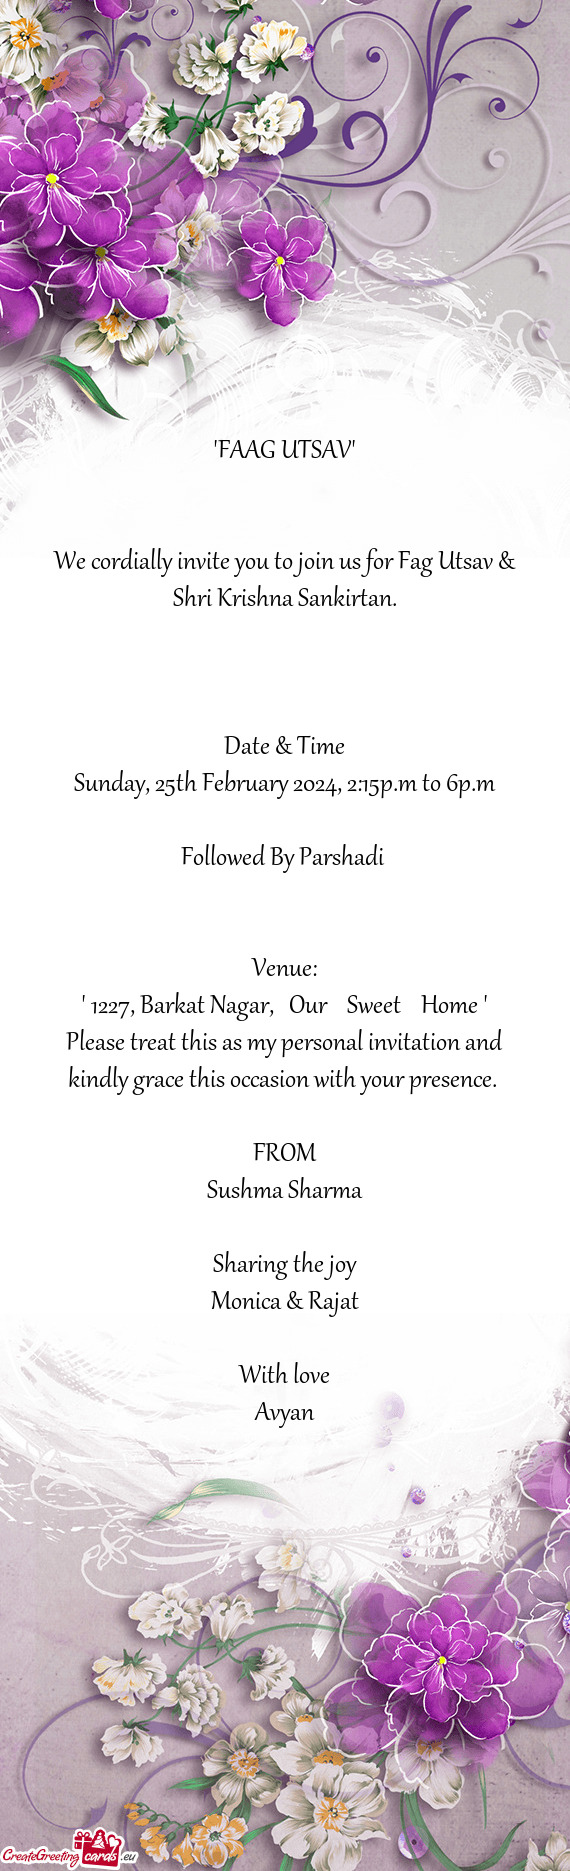 We cordially invite you to join us for Fag Utsav & Shri Krishna Sankirtan